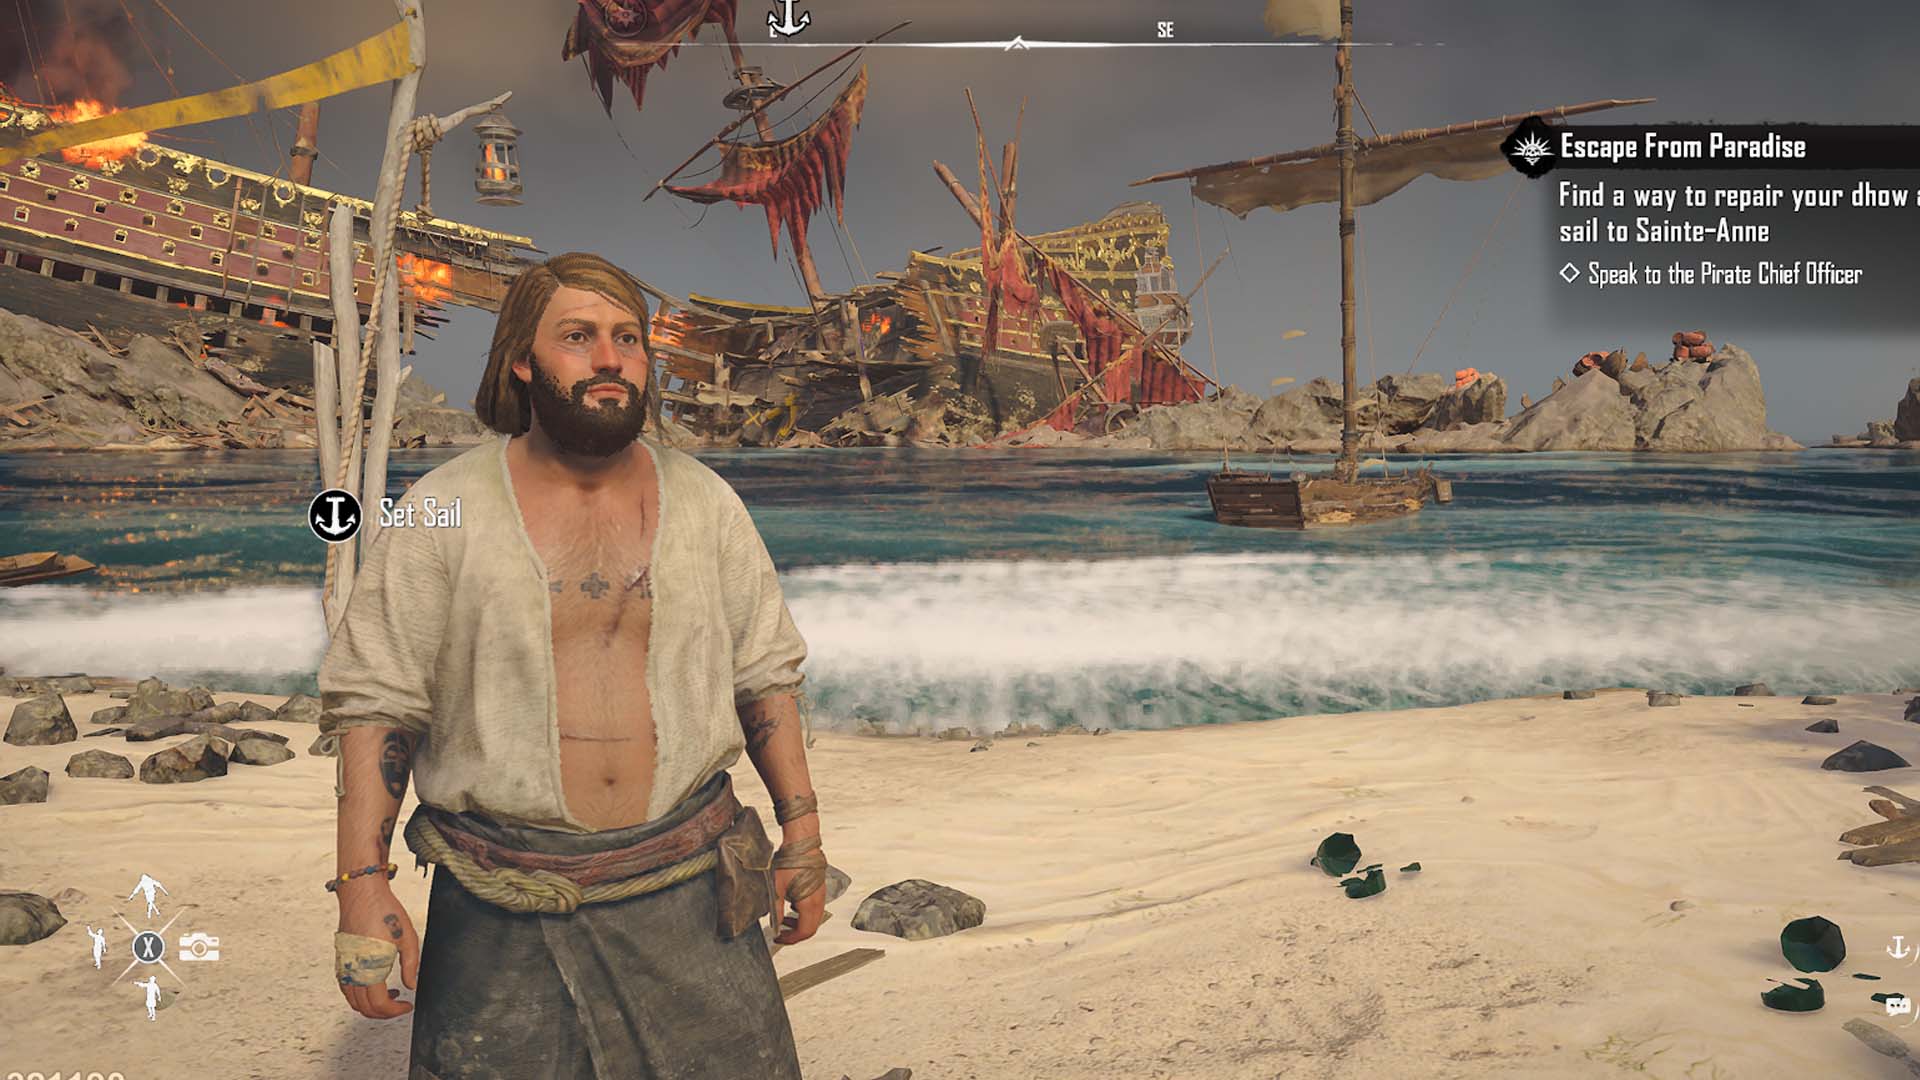 A screenshot shows a man standing on a beach near a shipwreck. 